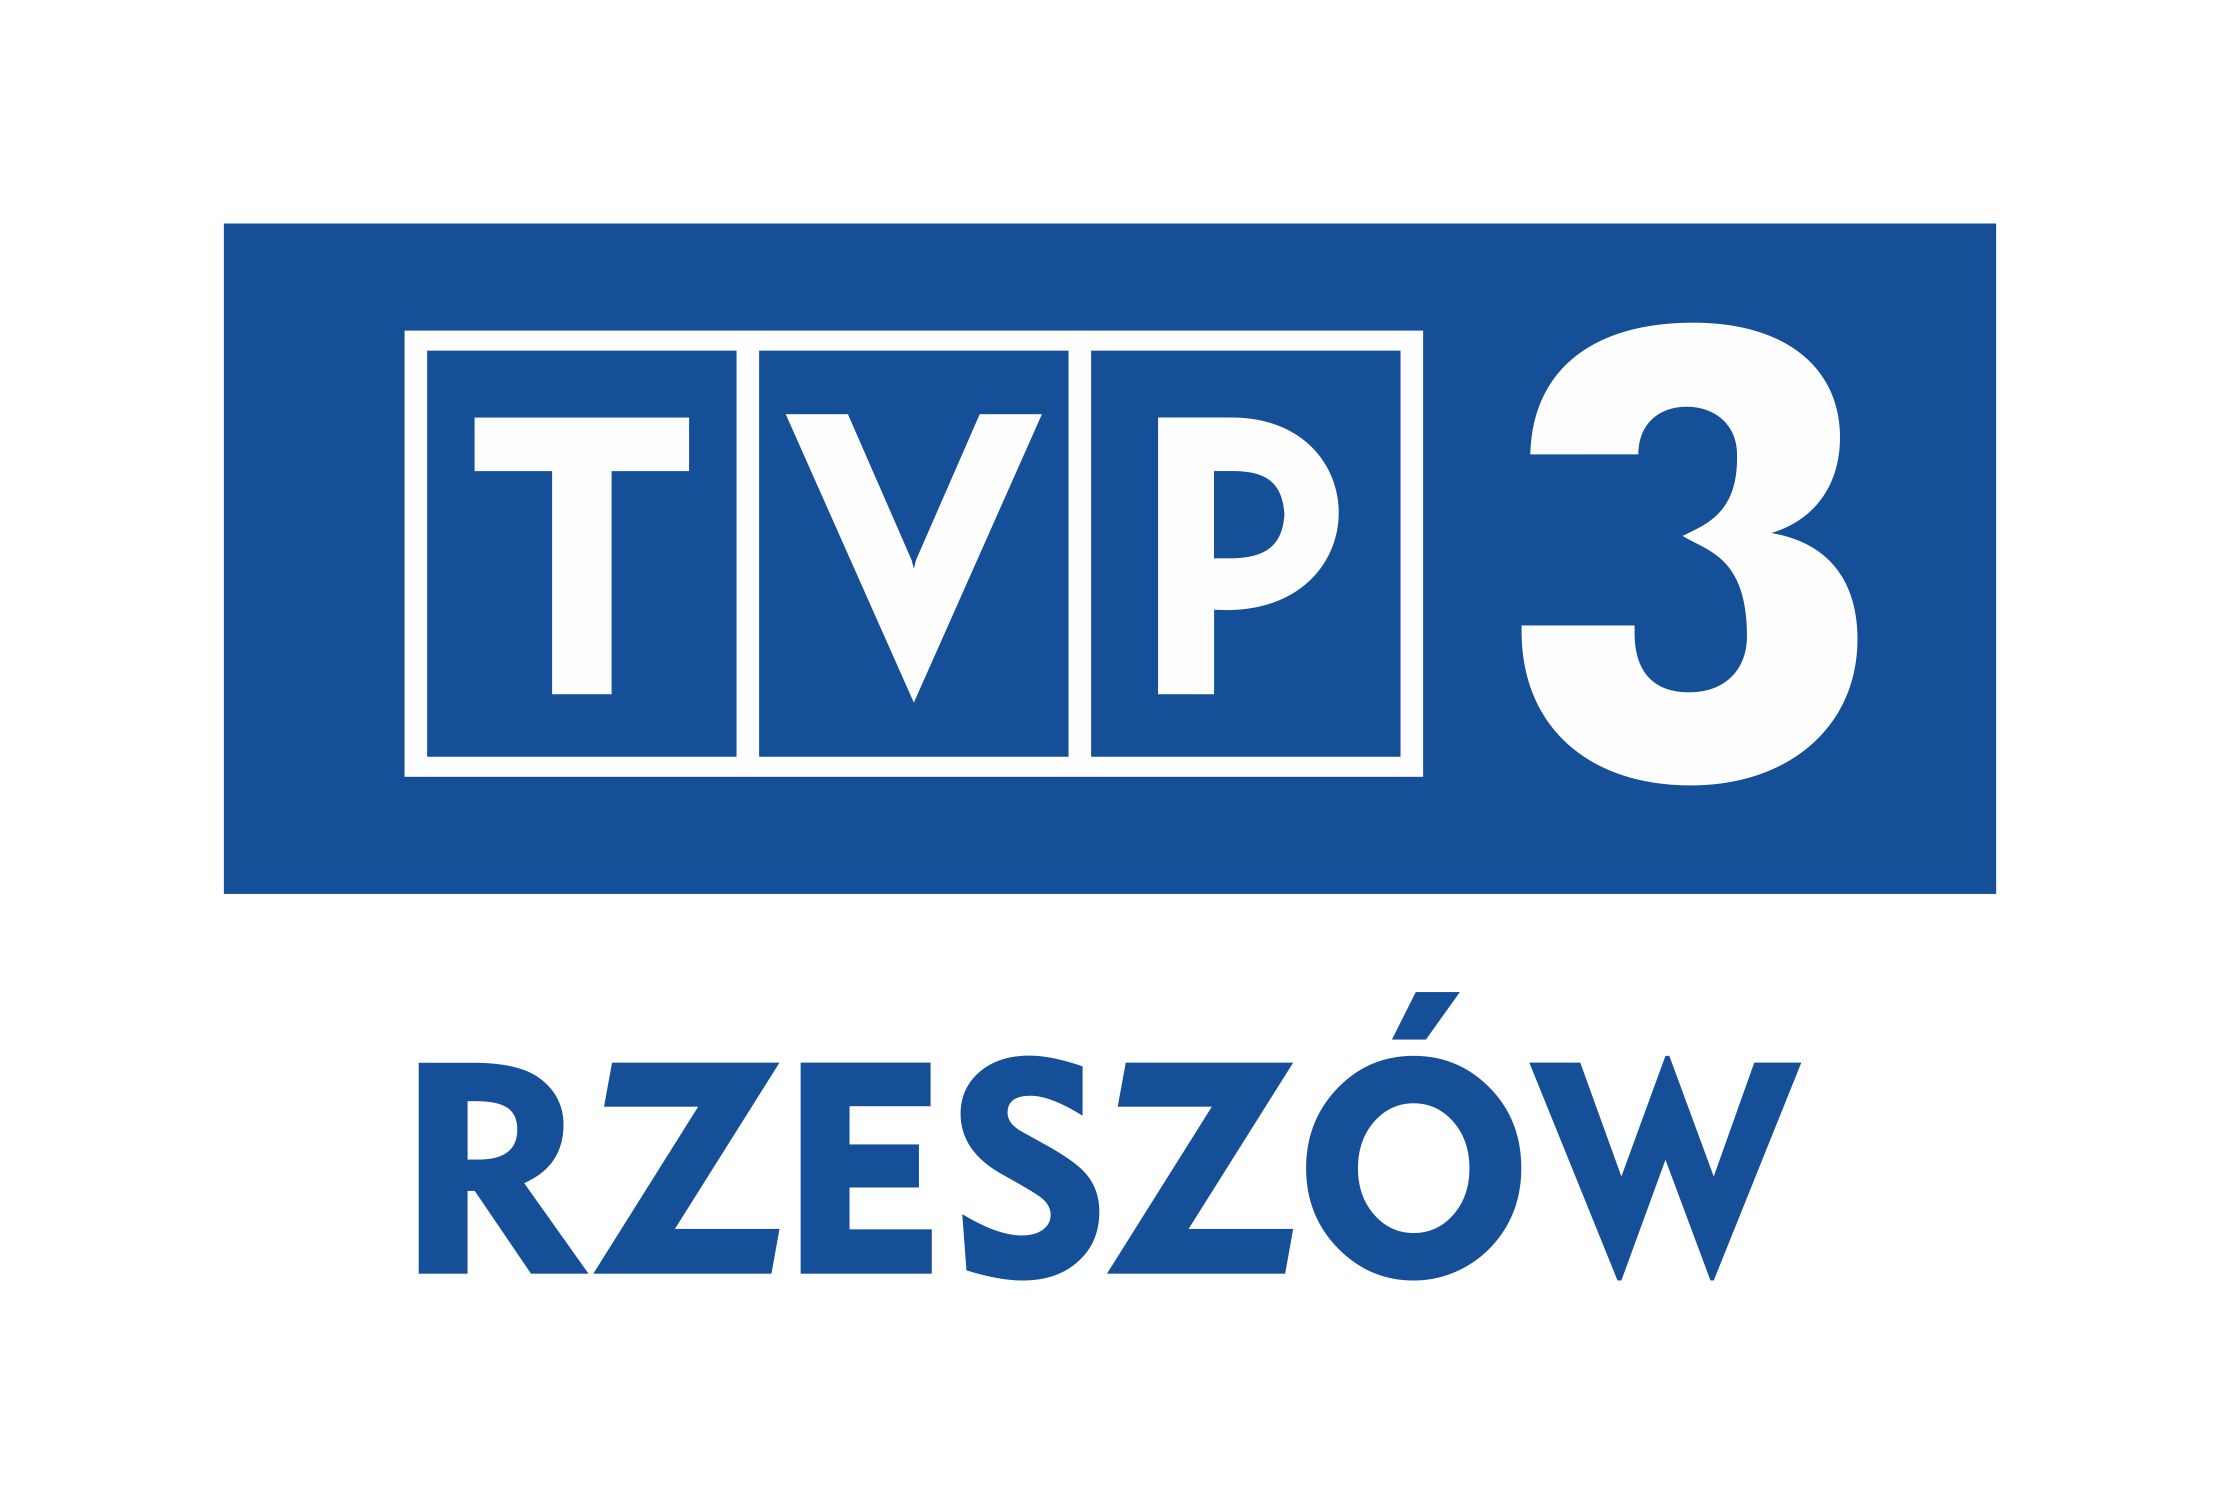 logo TVP 3 Rzeszów